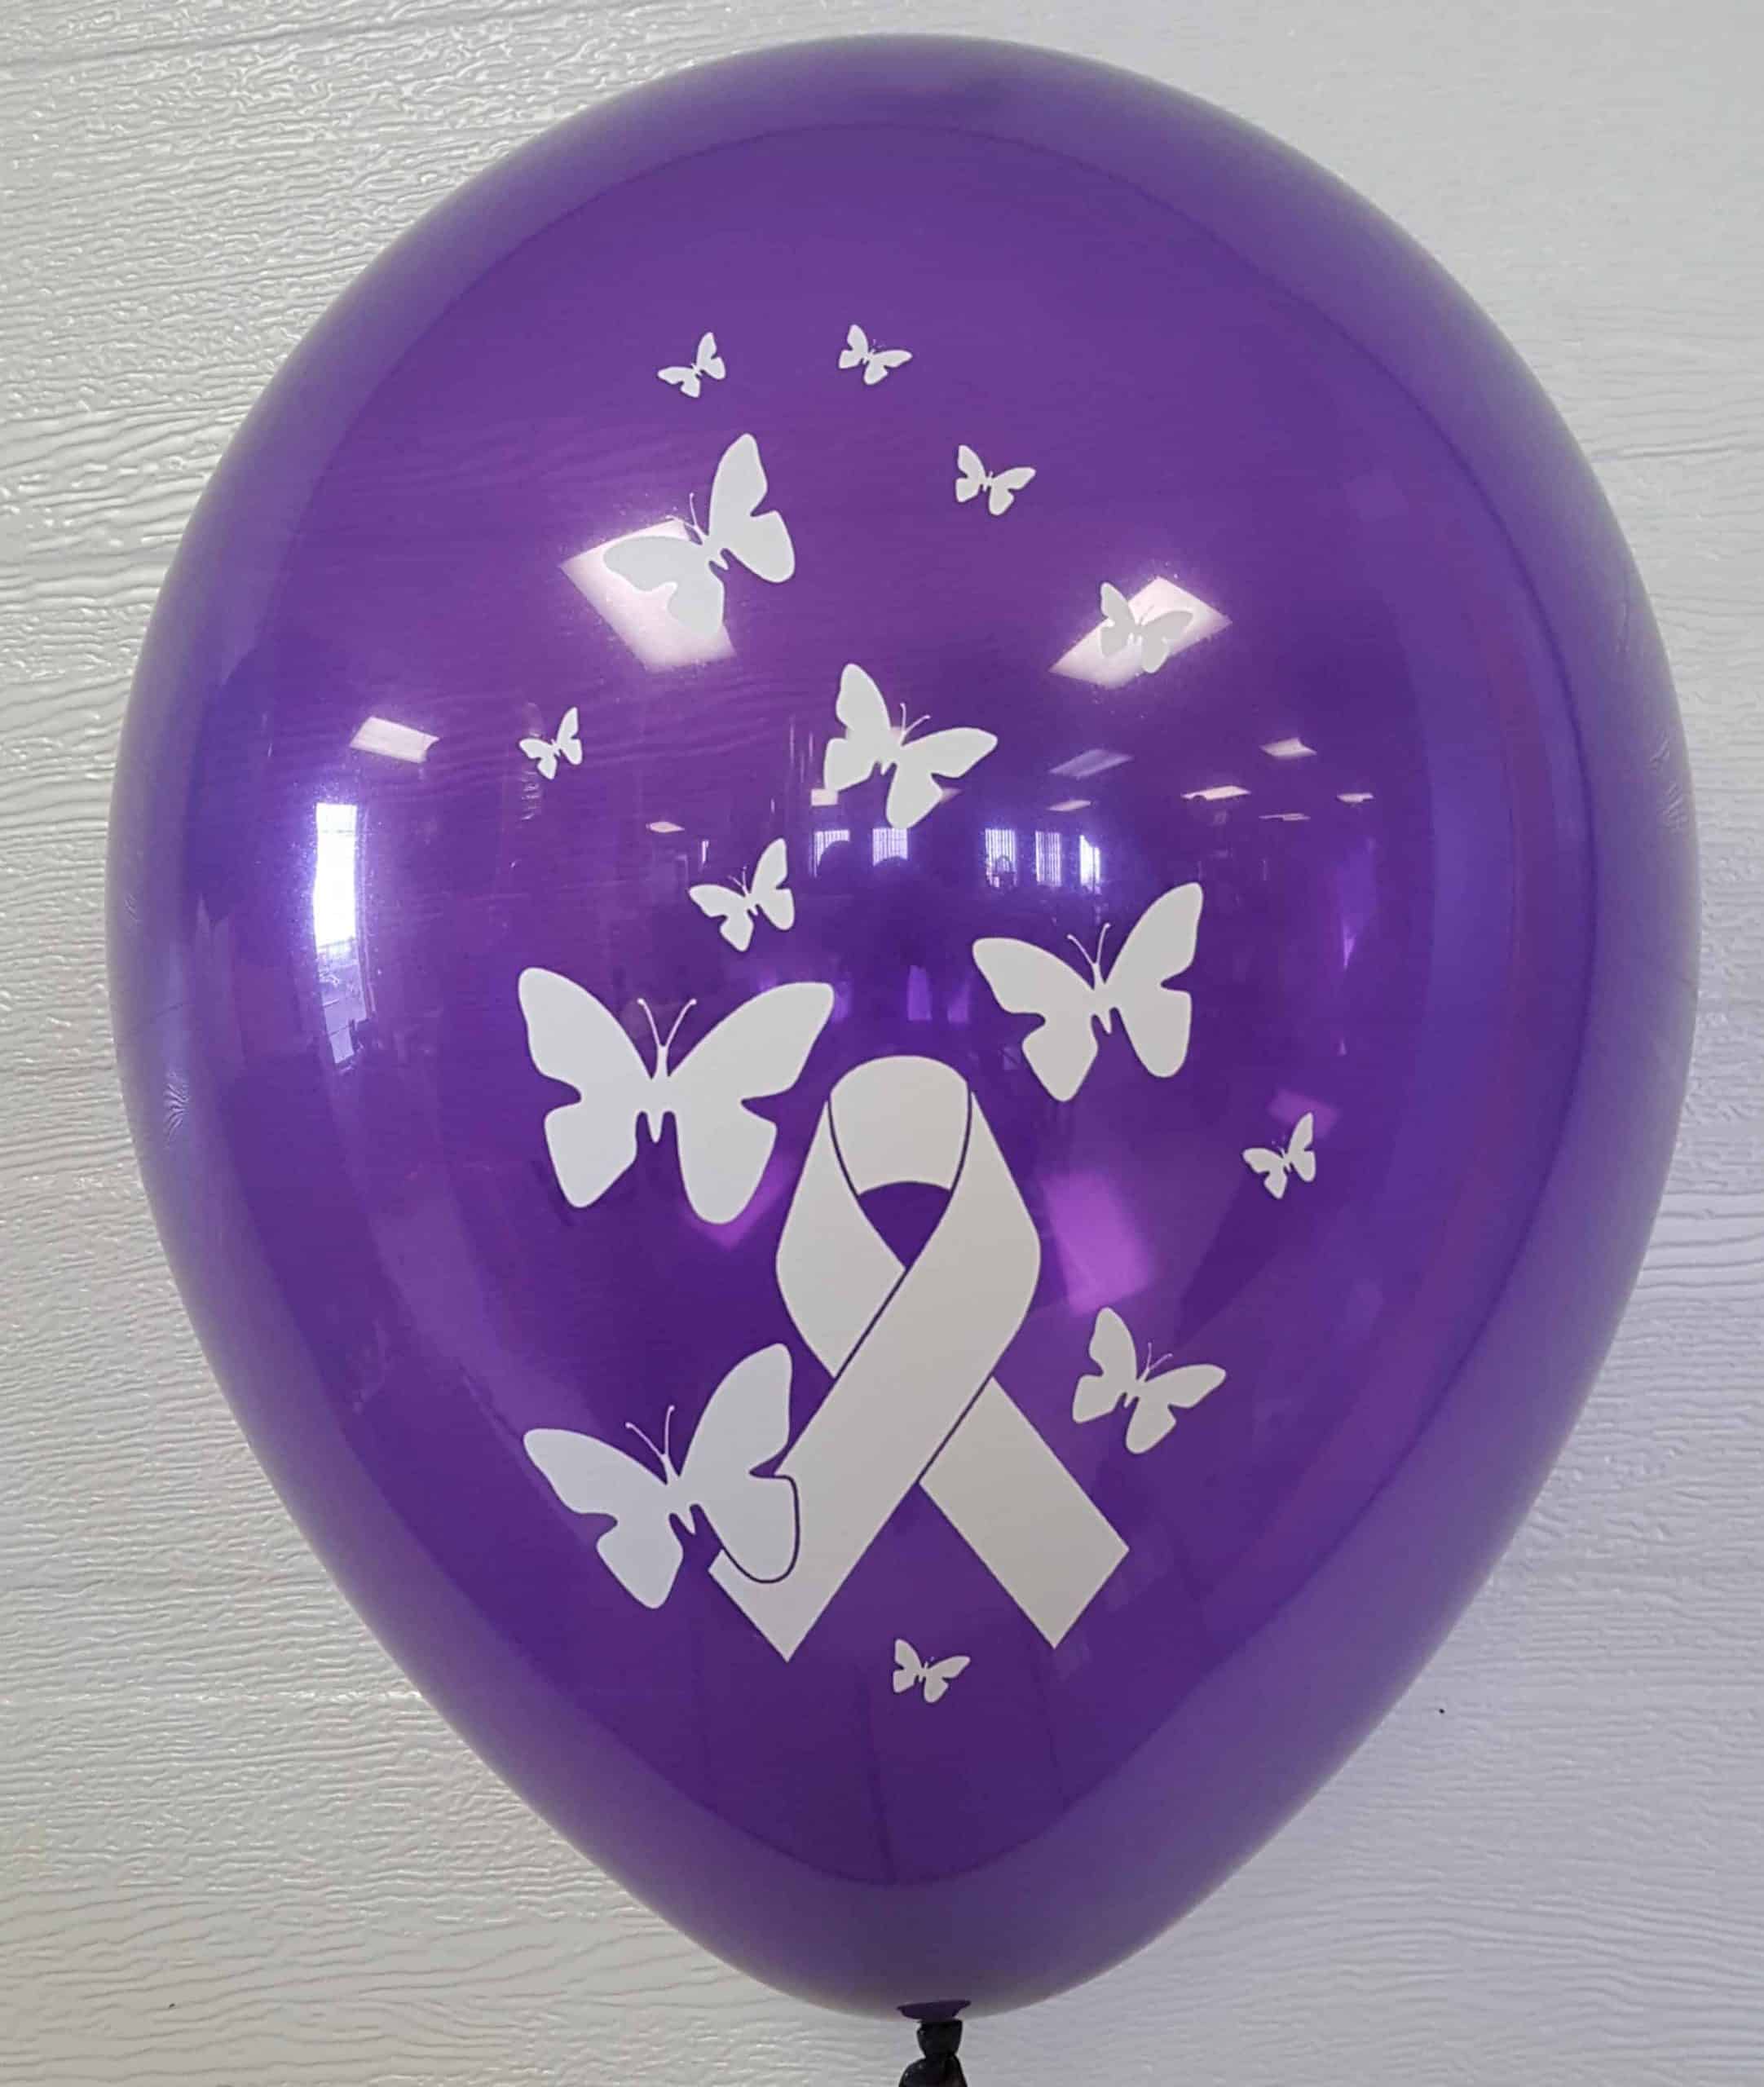 Custom Balloons for Not-for-profit